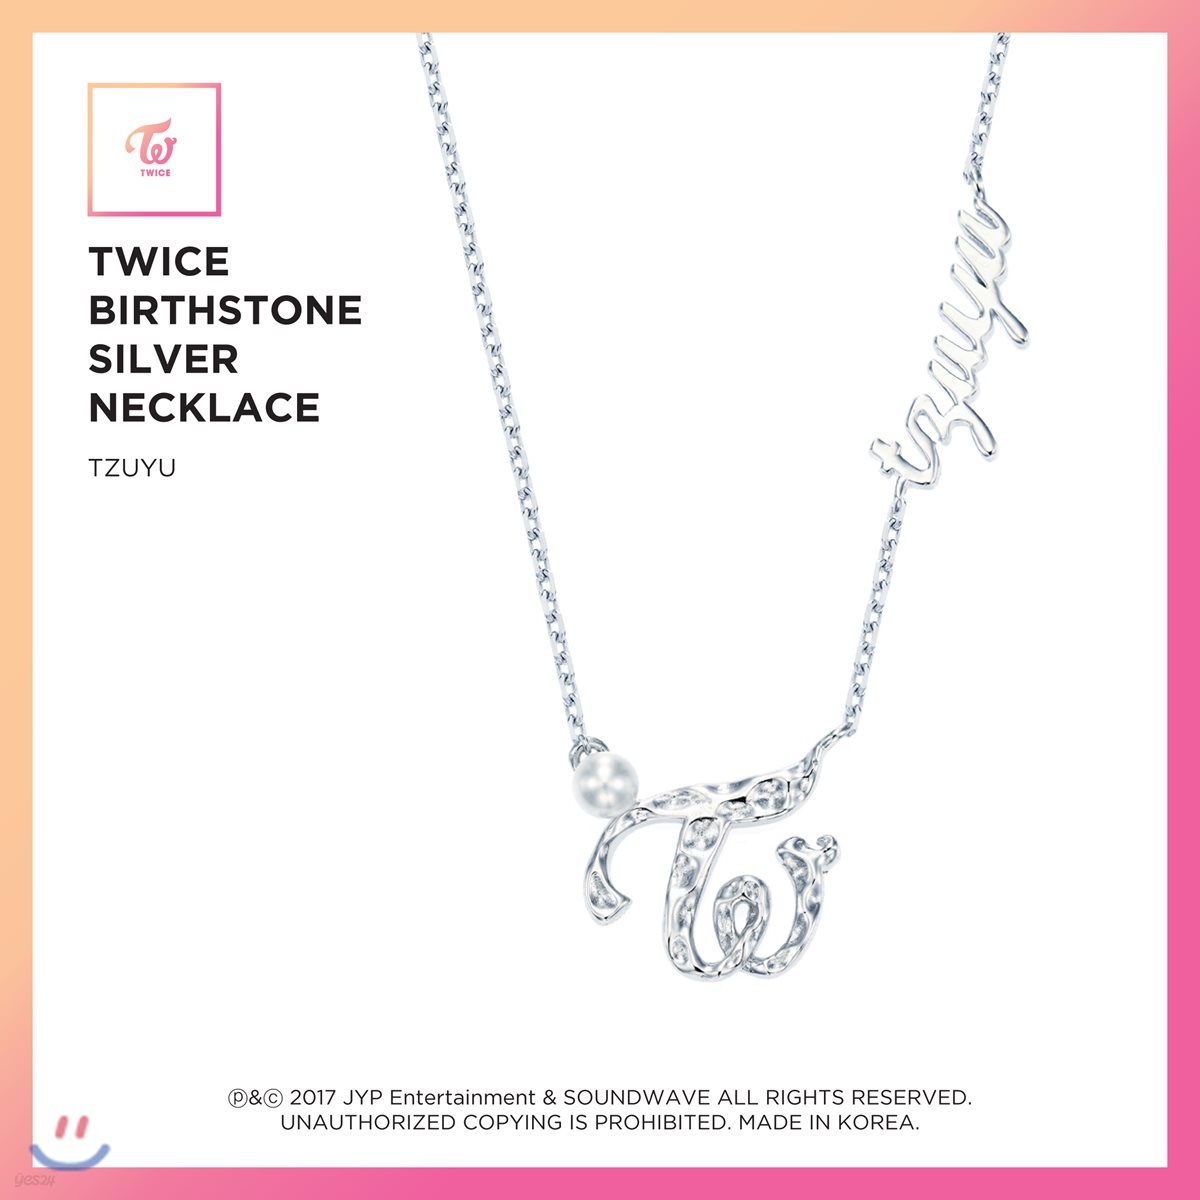 트와이스 (TWICE) - TWICE Birthstone Silver Necklace [Tzuyu]